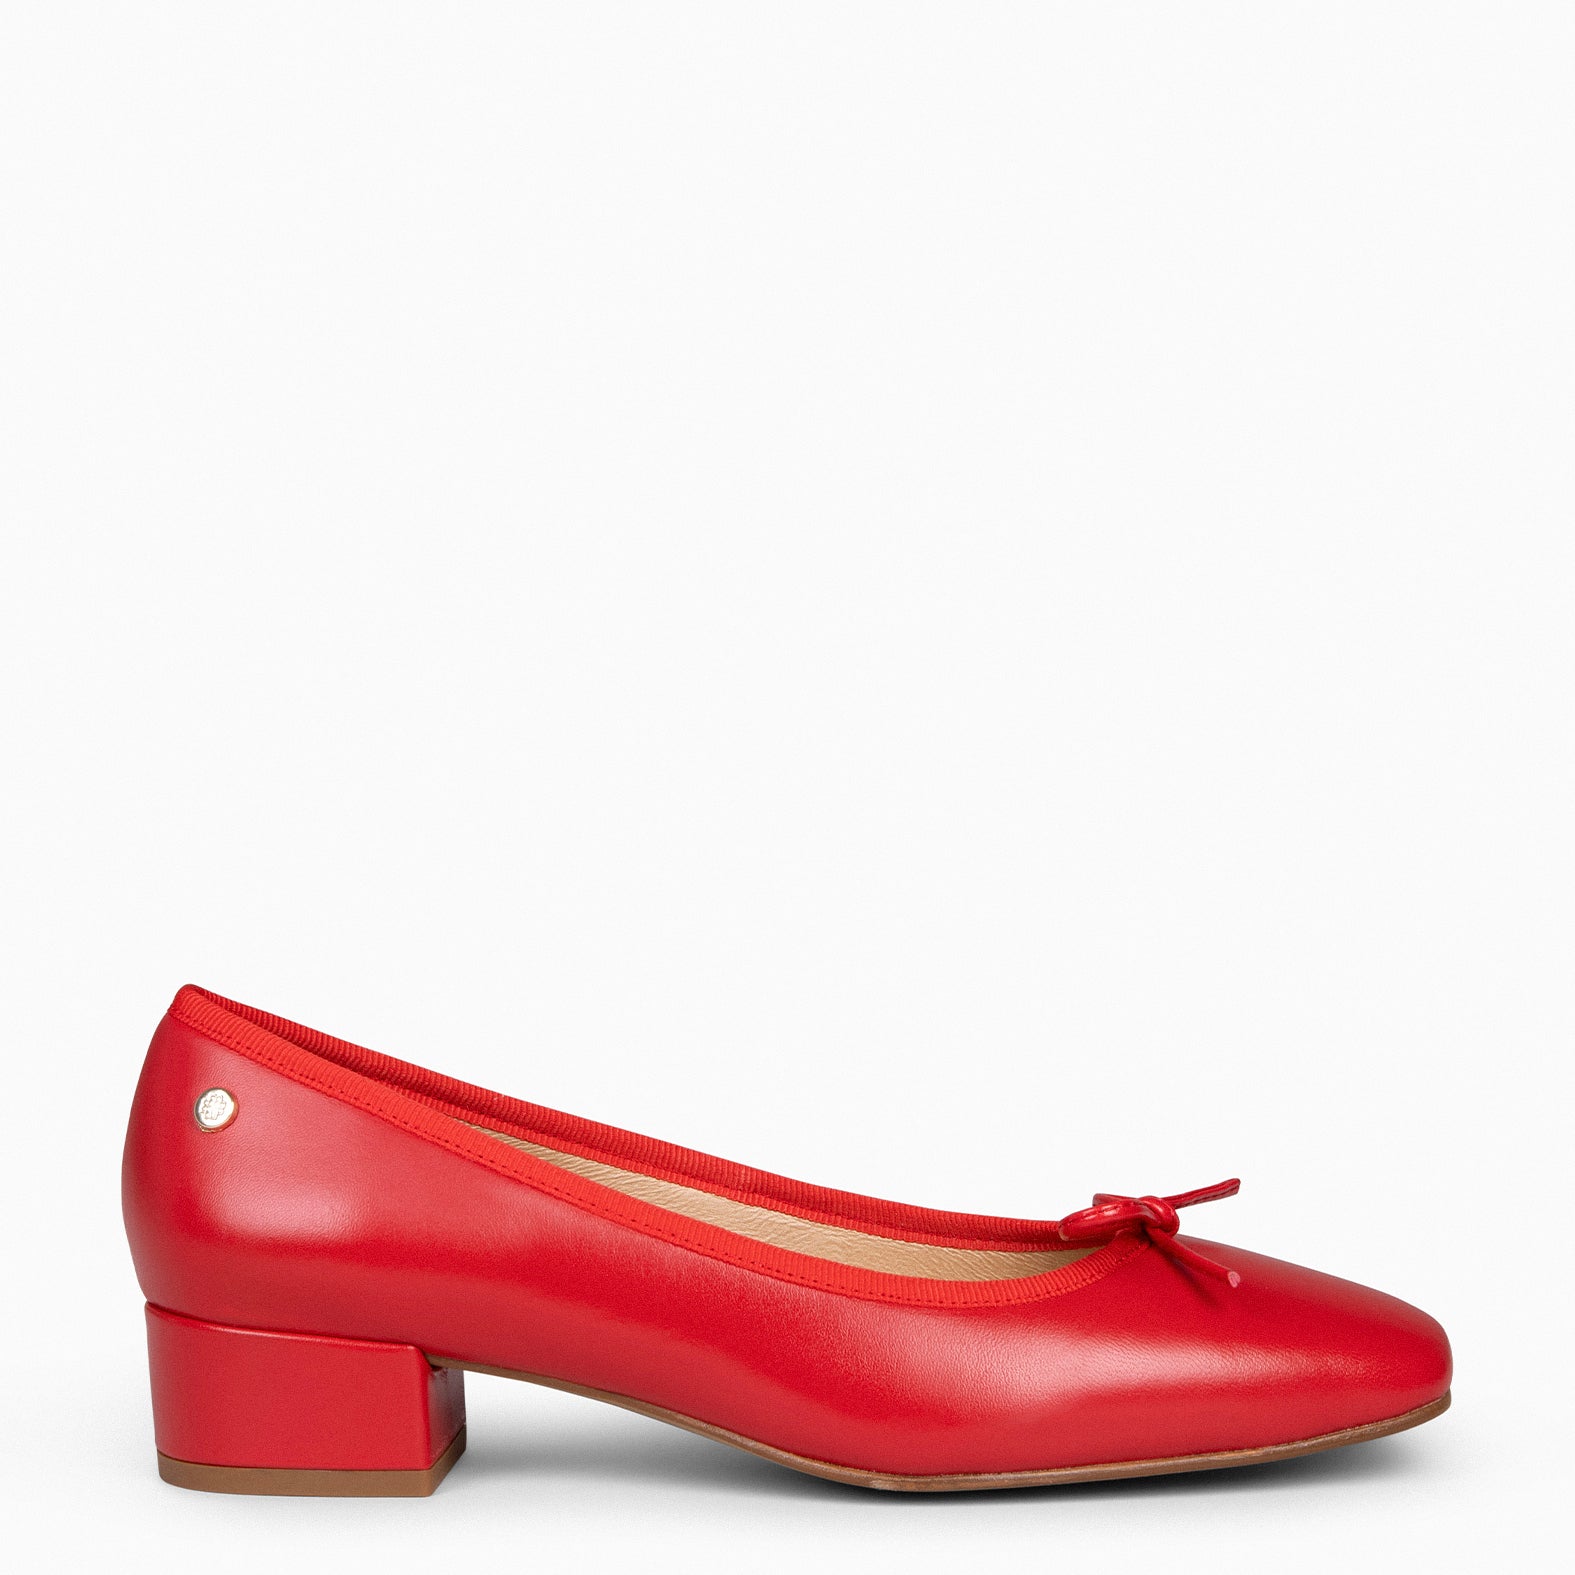 Zapatillas · Rojos · Moda mujer · El Corte Inglés (83)